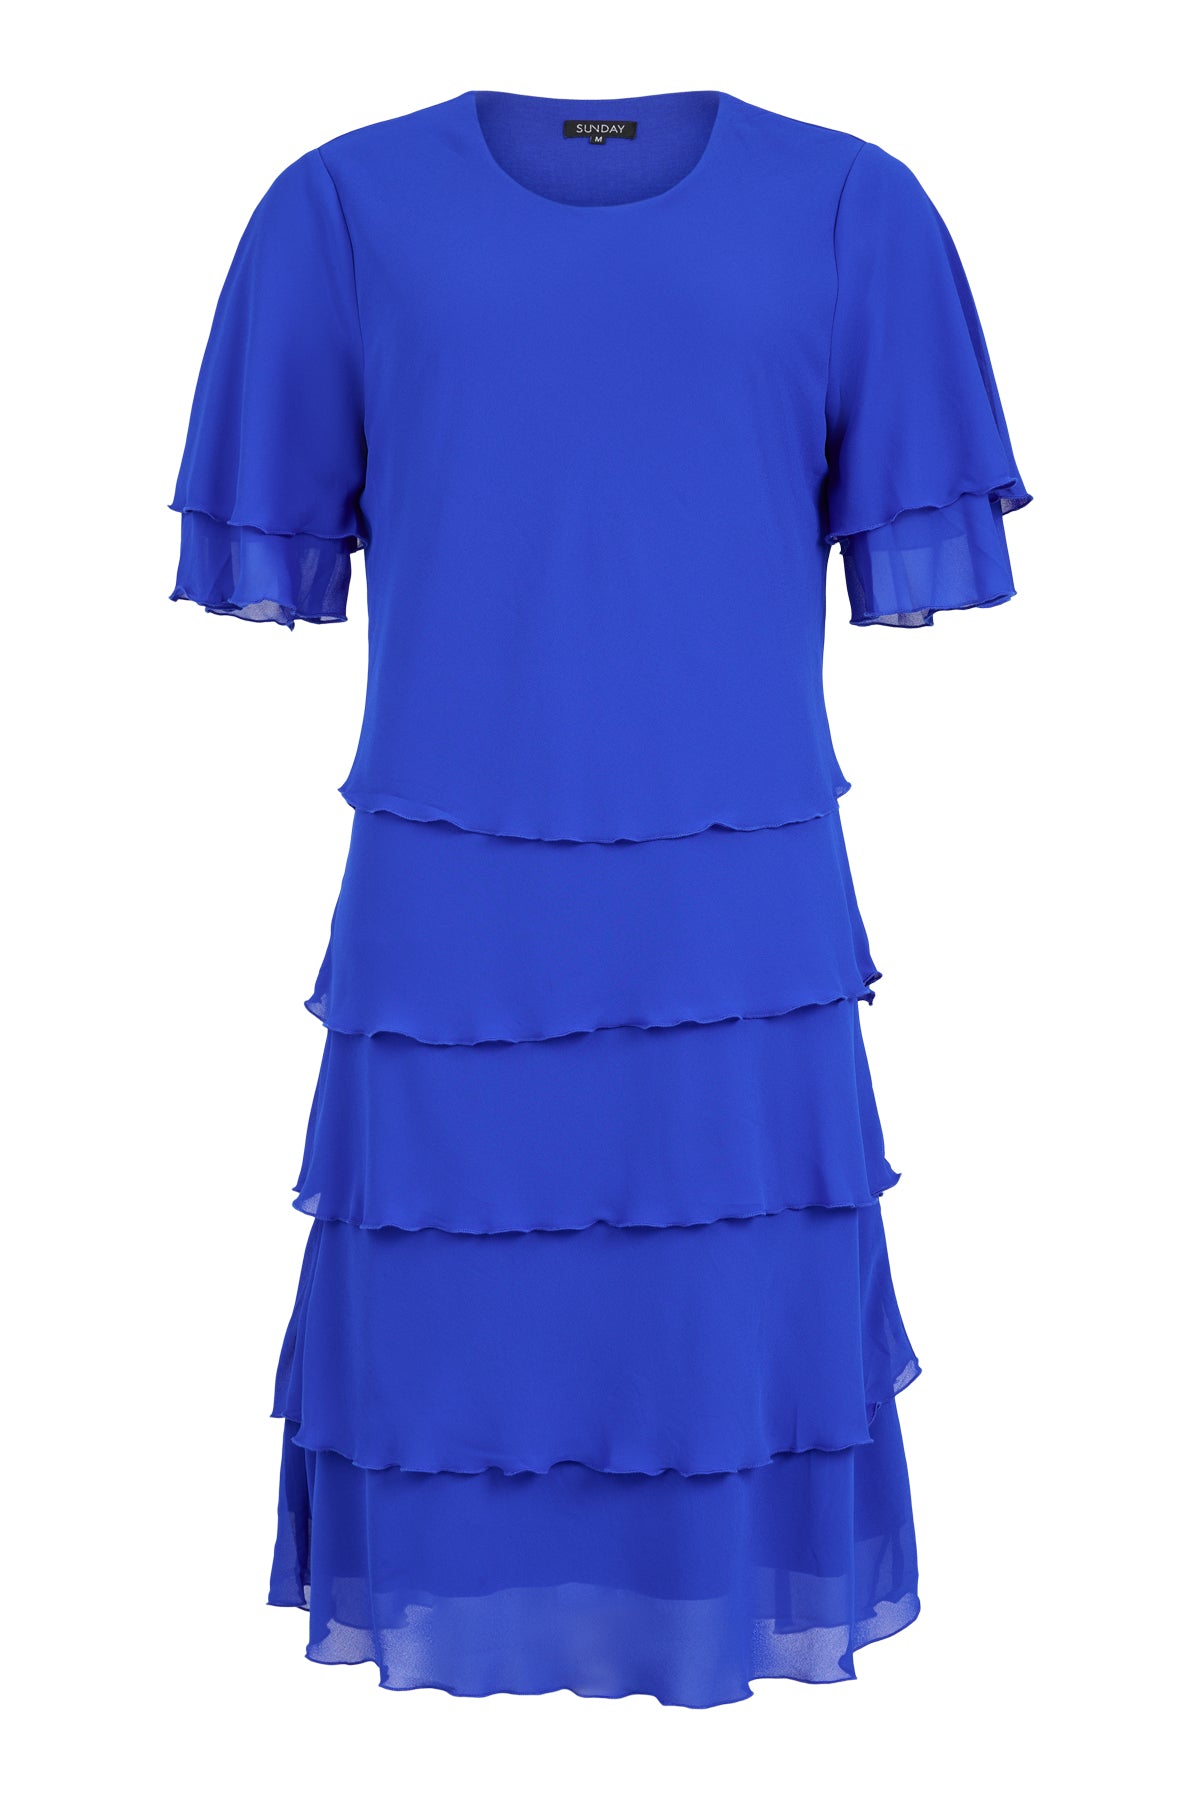 Sunday Blue Layered Dress